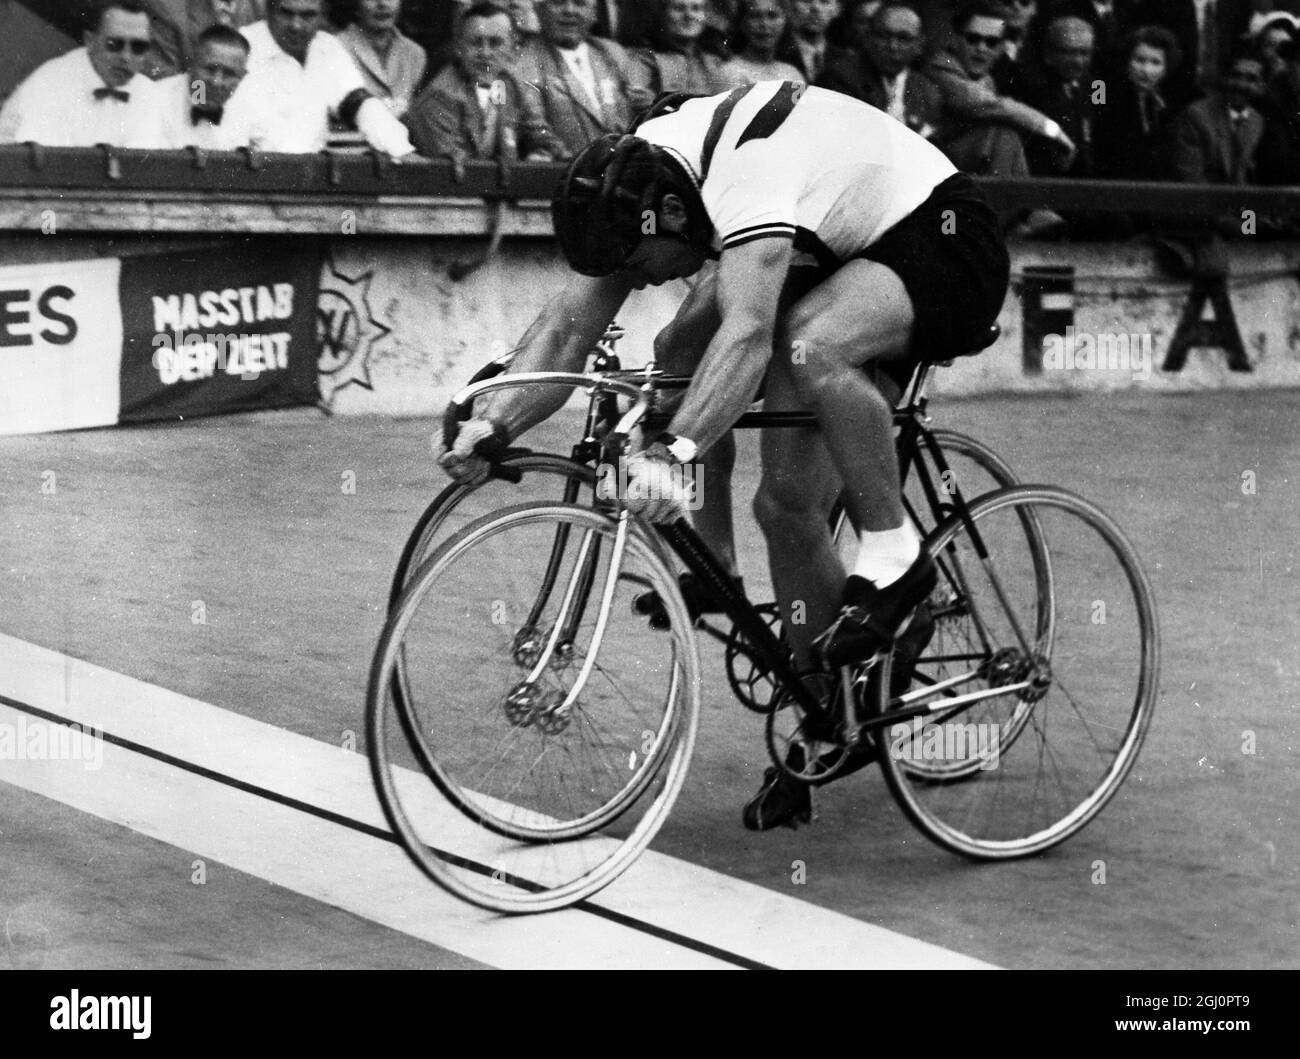 Der Brite gewinnt den Titel des Cycle Trial. Köln : der britische Cyril-Pfau ( Vordergrund ) schlägt John Treside aus Australien, um die Amateur World Cycle Print Championship vor rund 34,000 Zuschauern zu gewinnen. 31. August 1954 Stockfoto